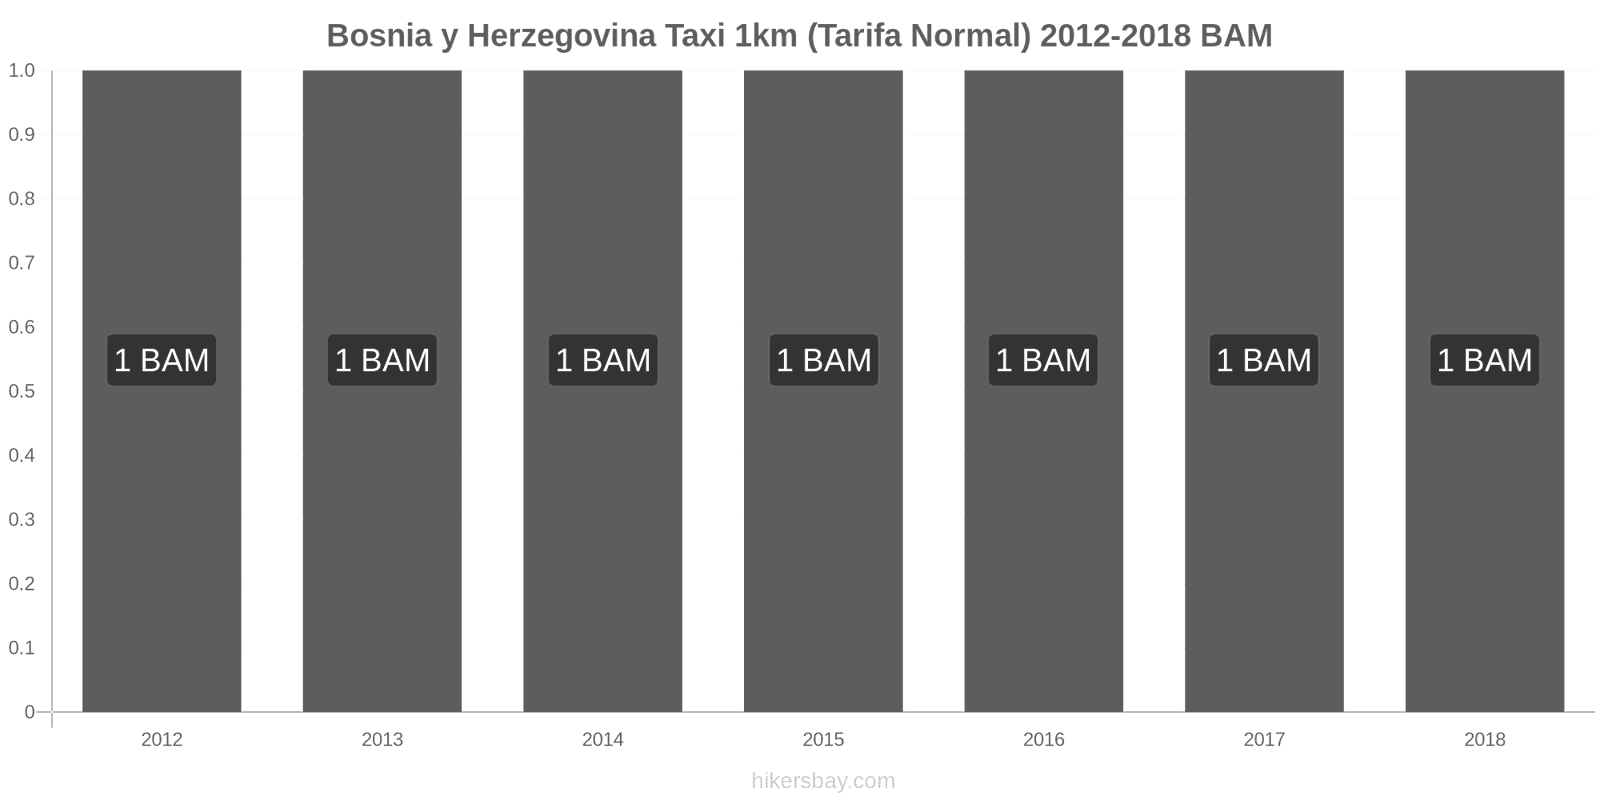 Bosnia y Herzegovina cambios de precios Taxi 1km (tarifa normal) hikersbay.com